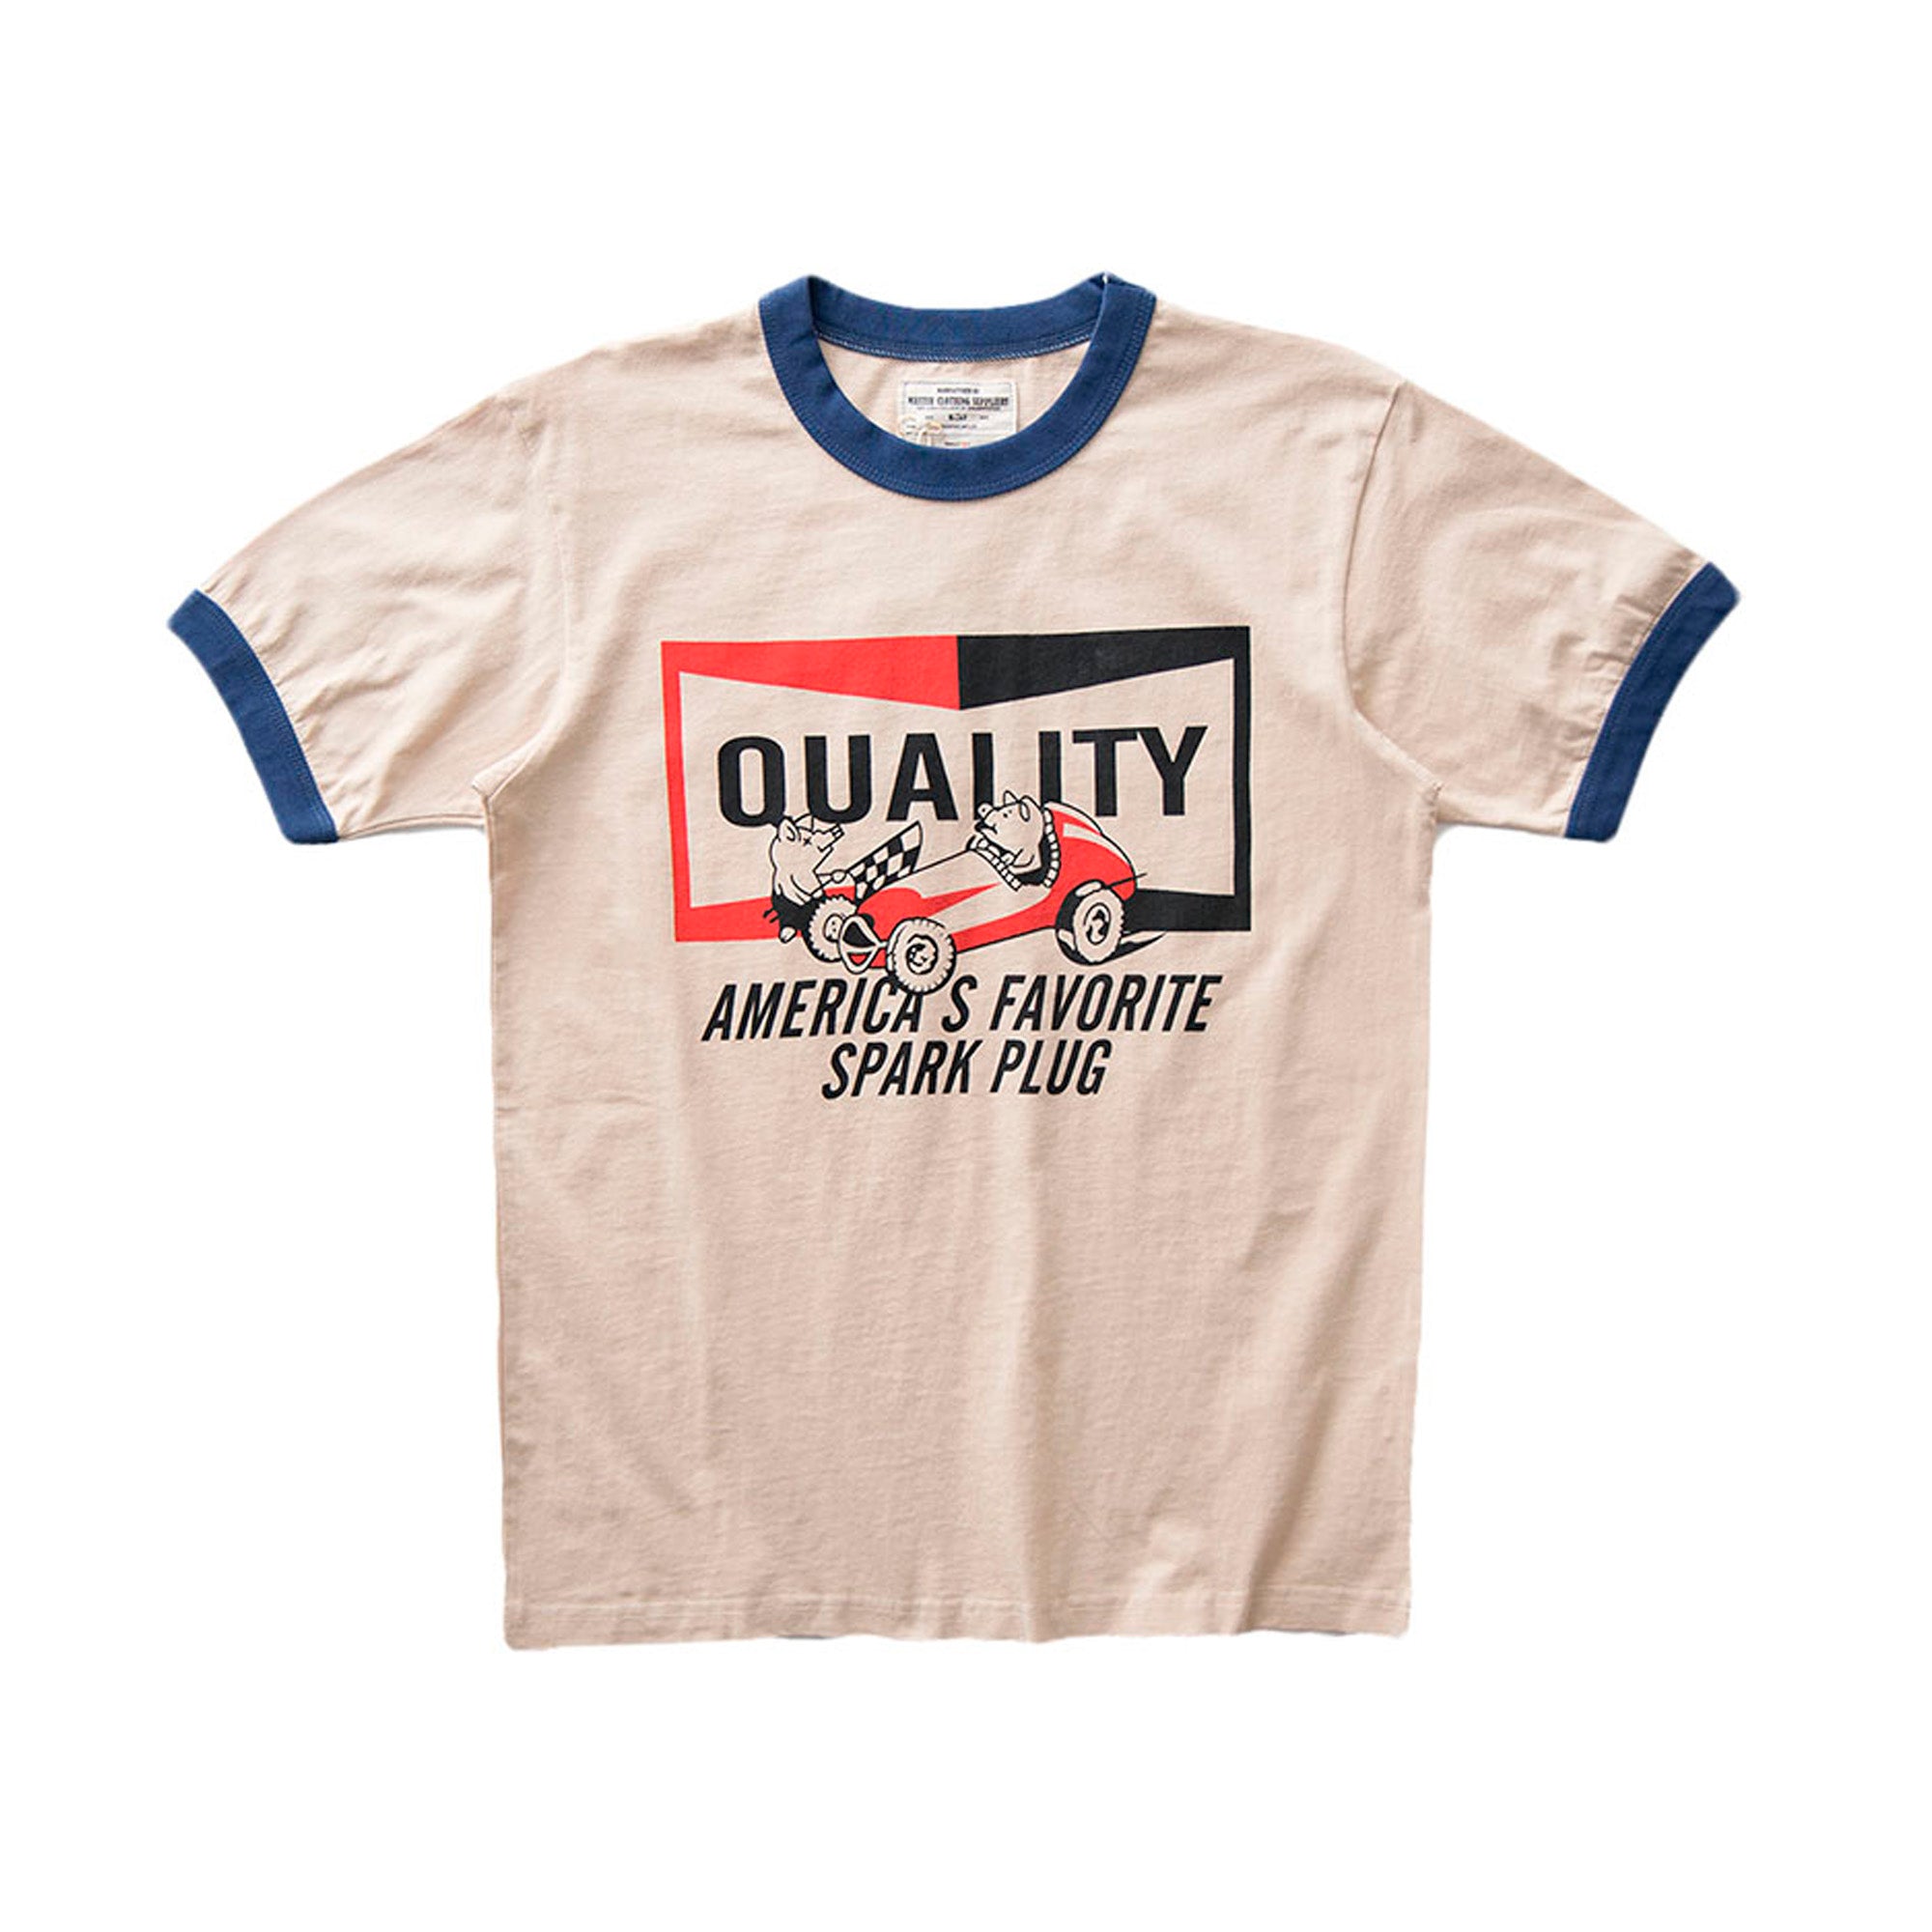 200g American retro t-shirt